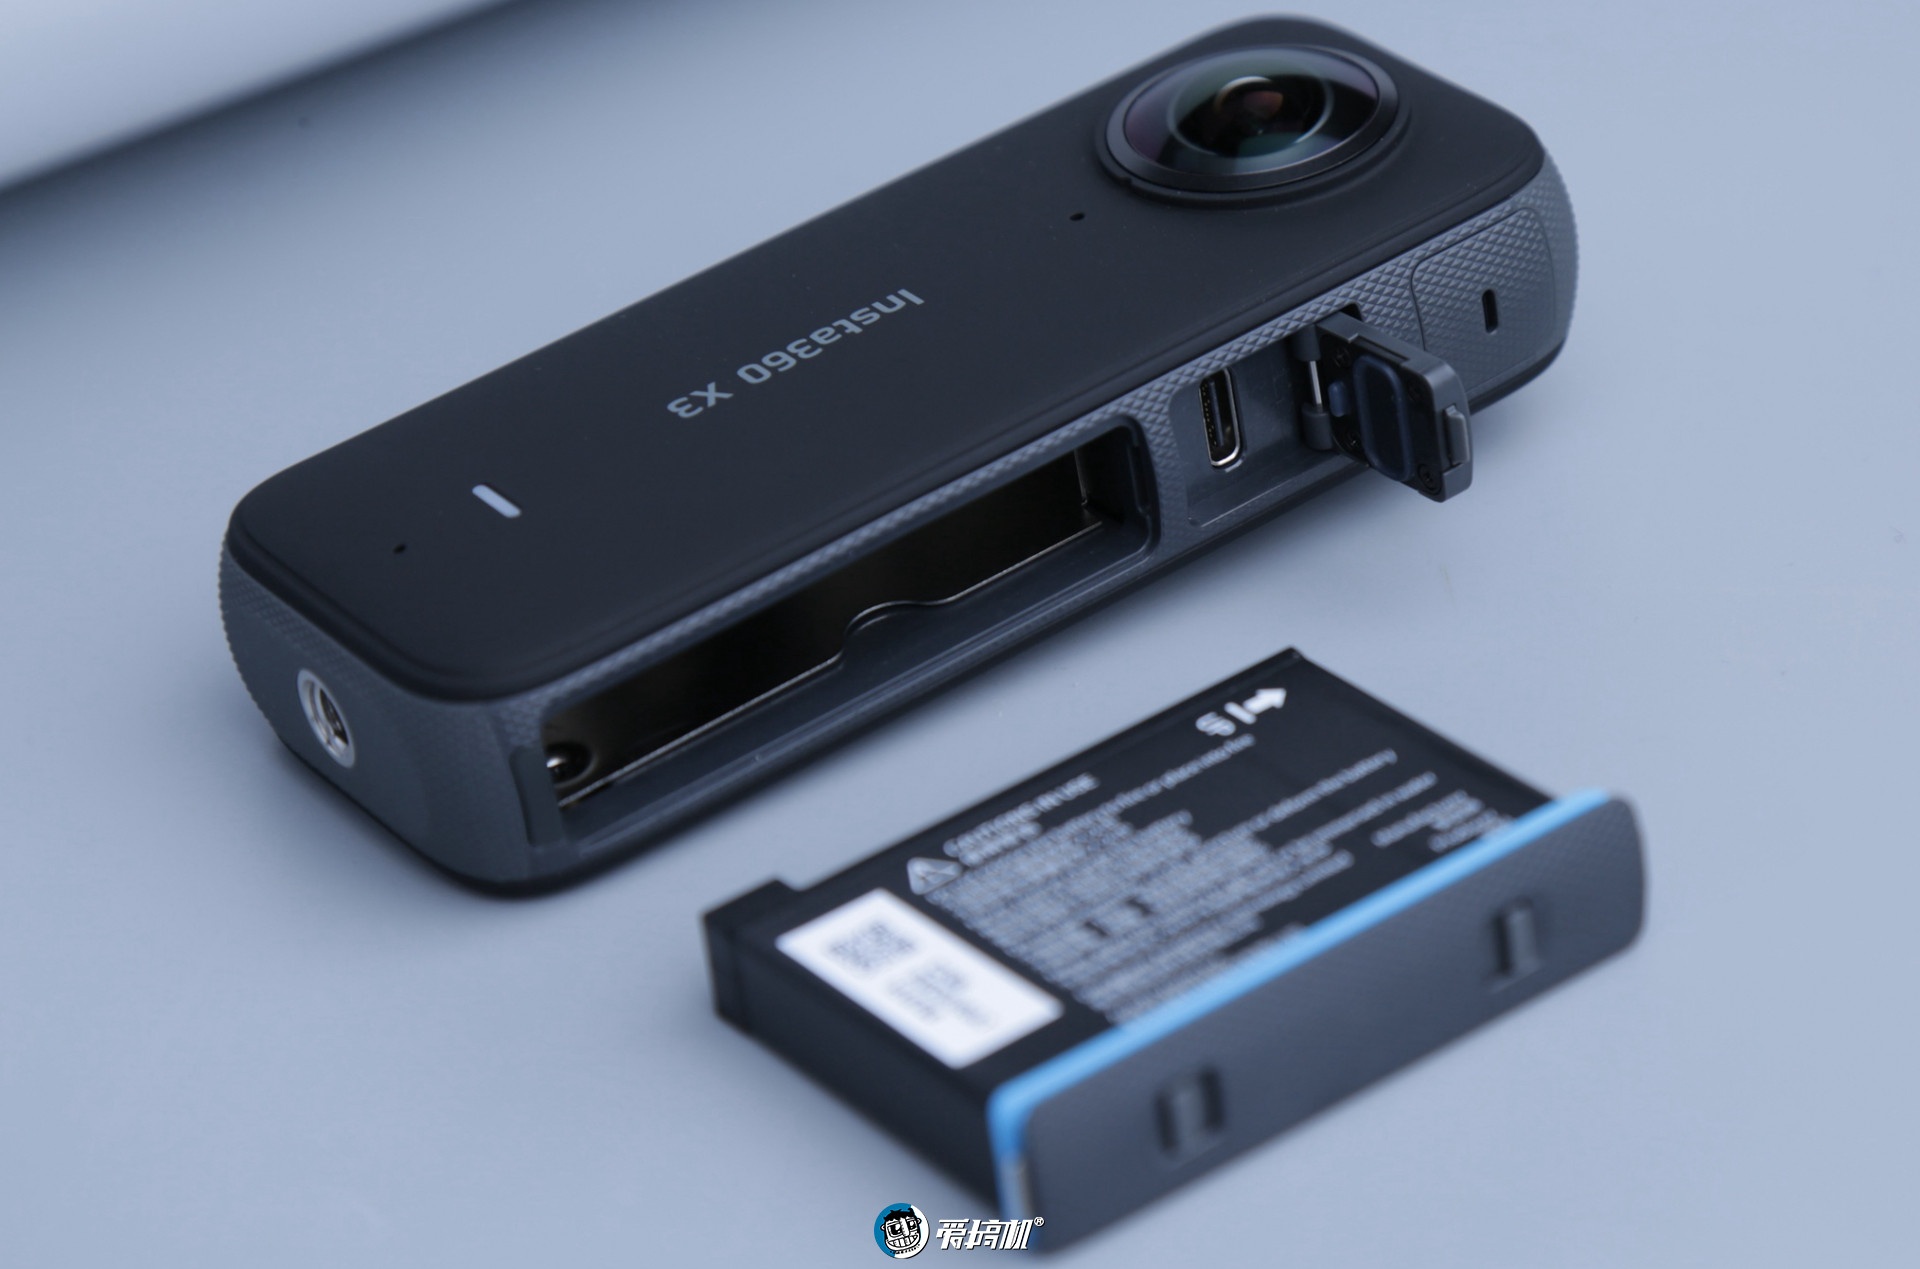 2998元的Insta360影石X3：还是最值得买的全景运动相机吗？